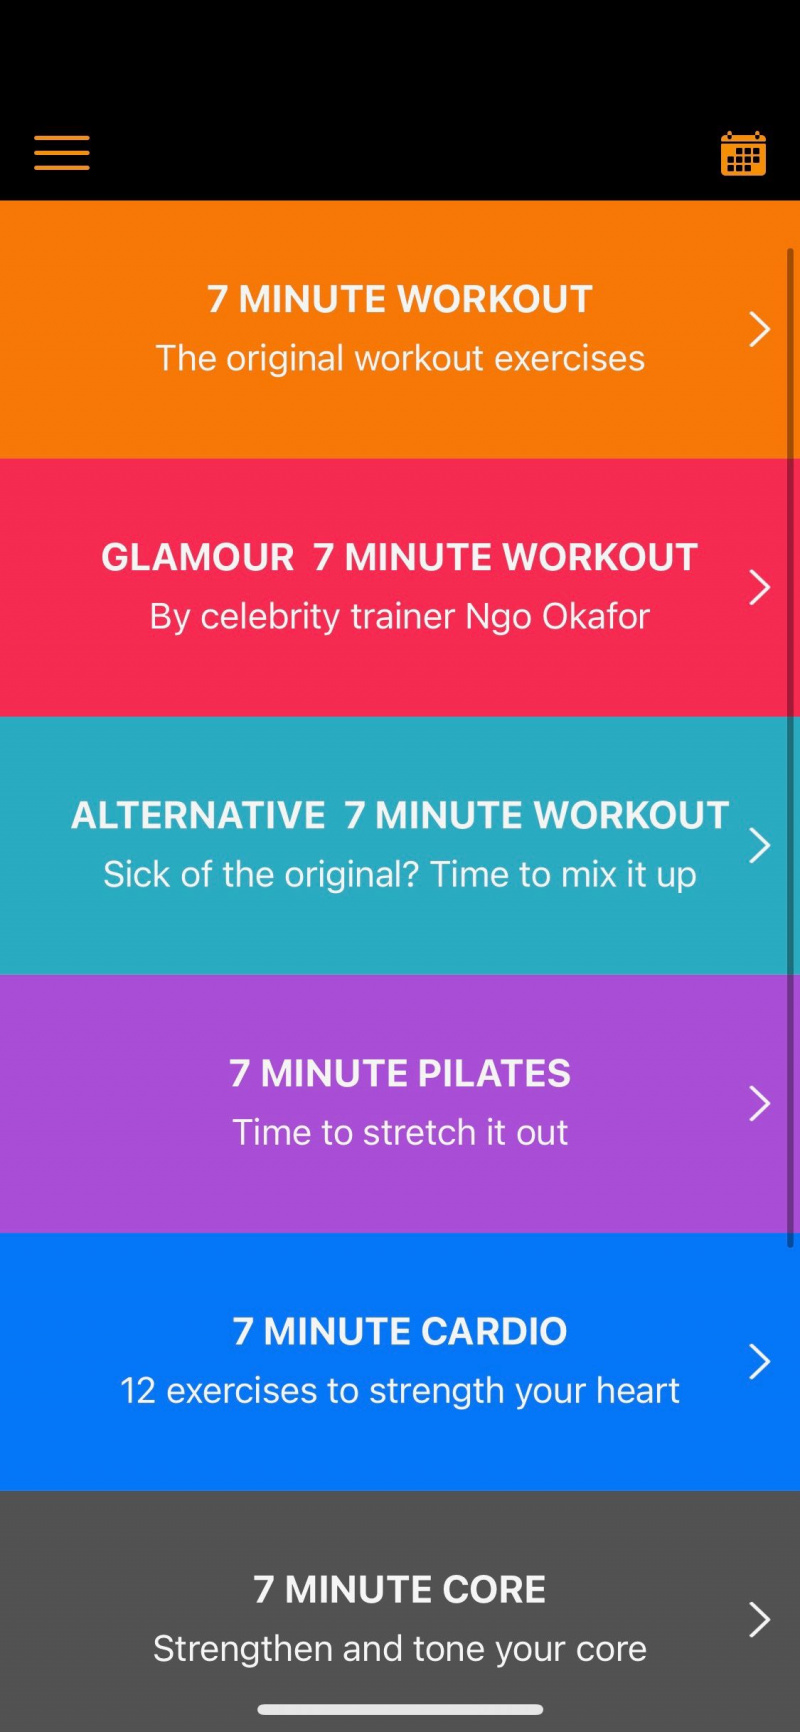   Snímka obrazovky aplikácie 7 Minute Workout zobrazujúca typy tréningov